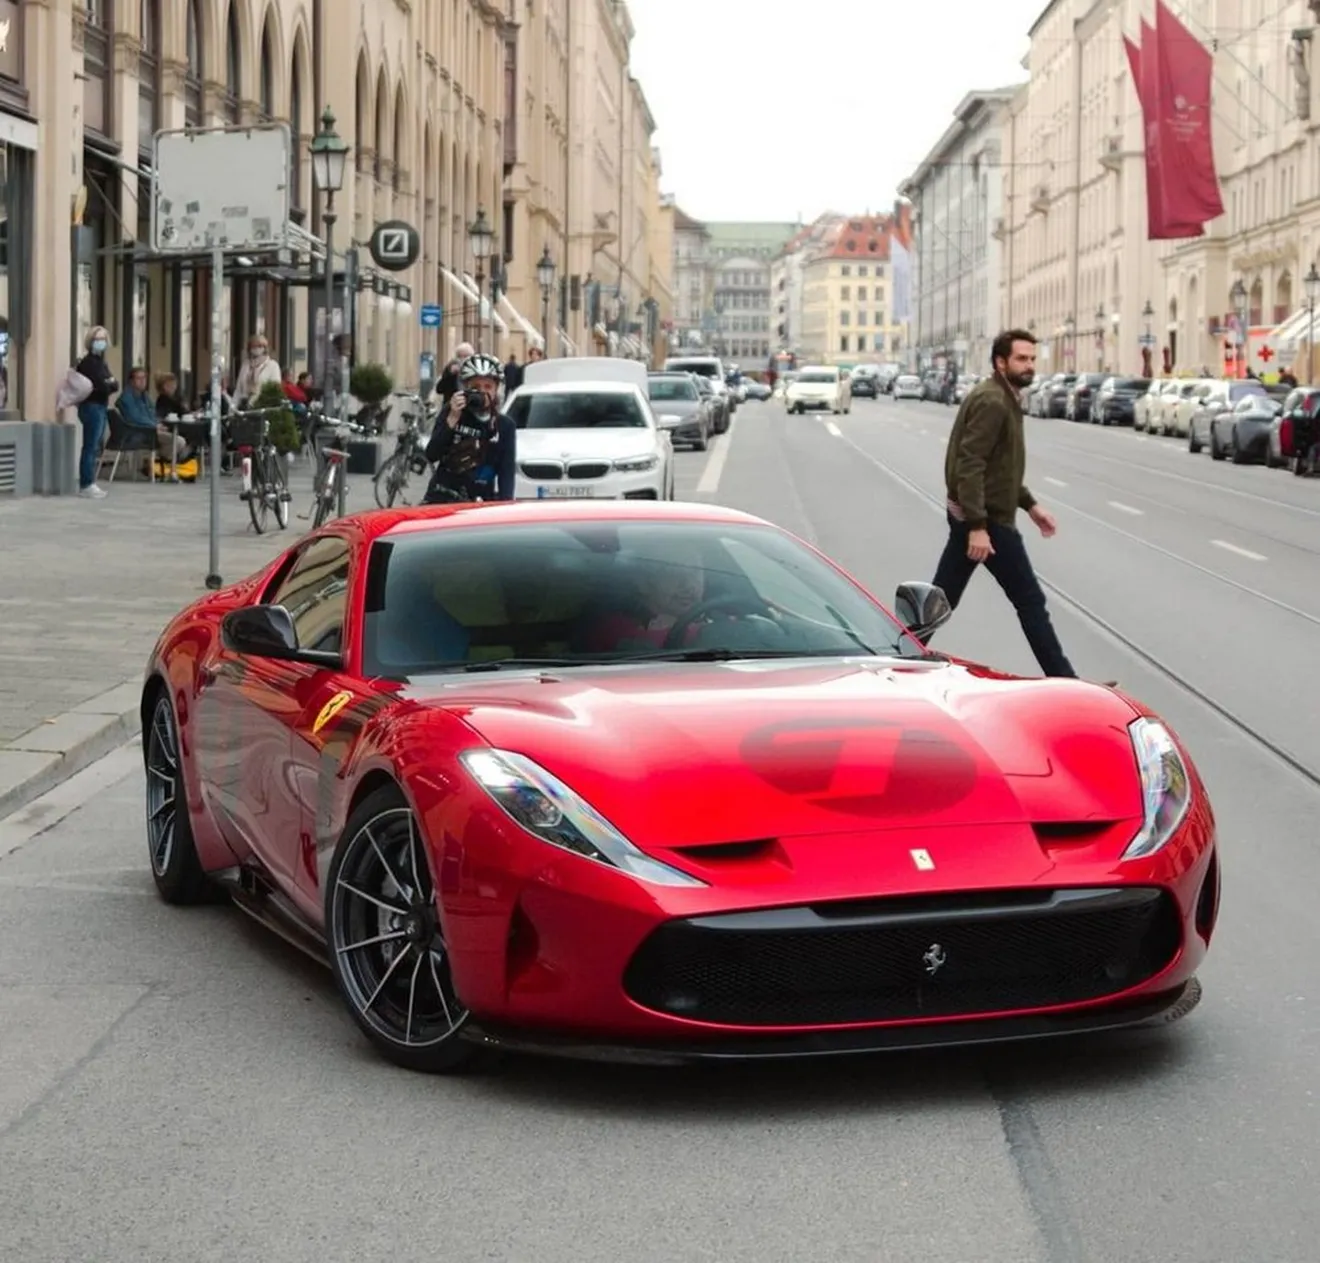 Primeras imágenes del impresionante Ferrari Omologata en la calle